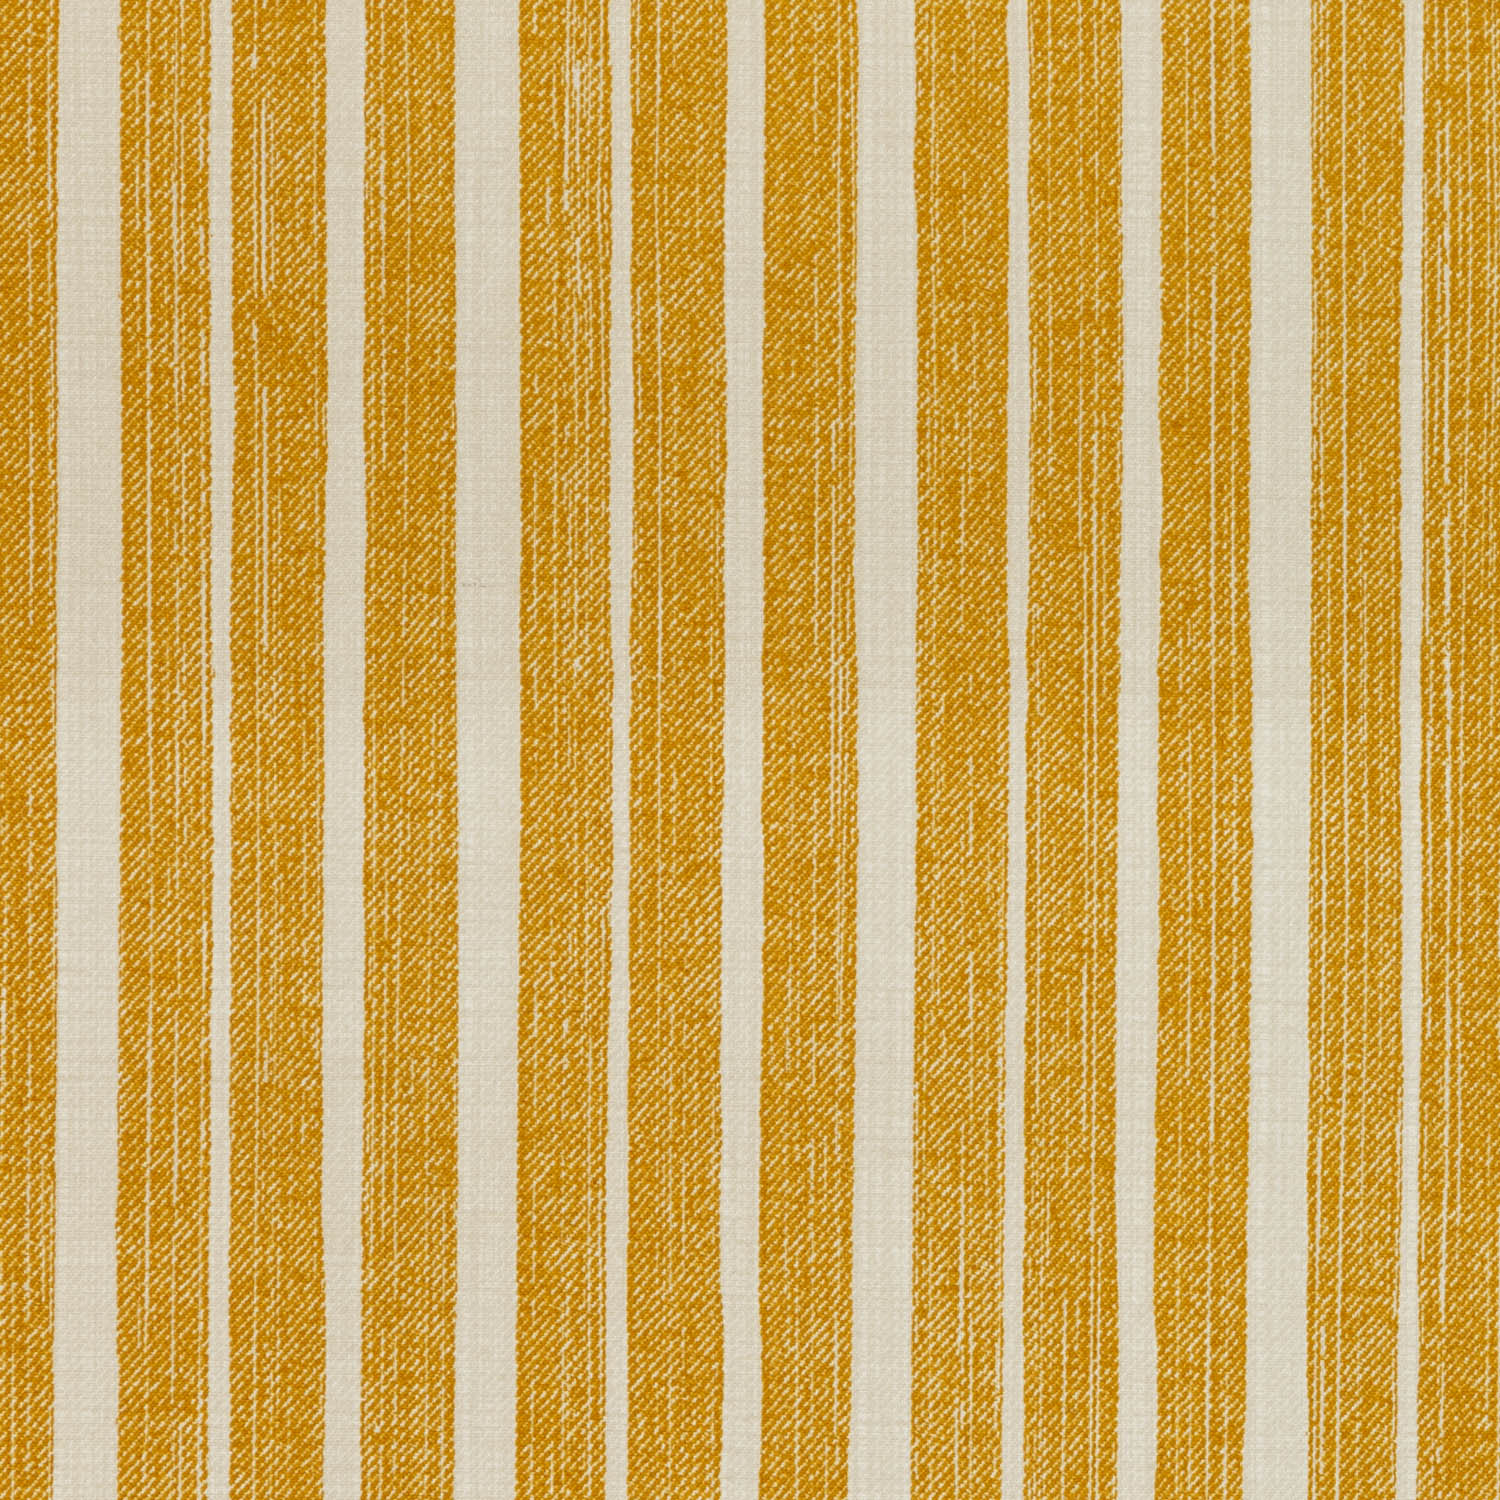 l-039-yellow-york-stripe-cotton-1.jpg